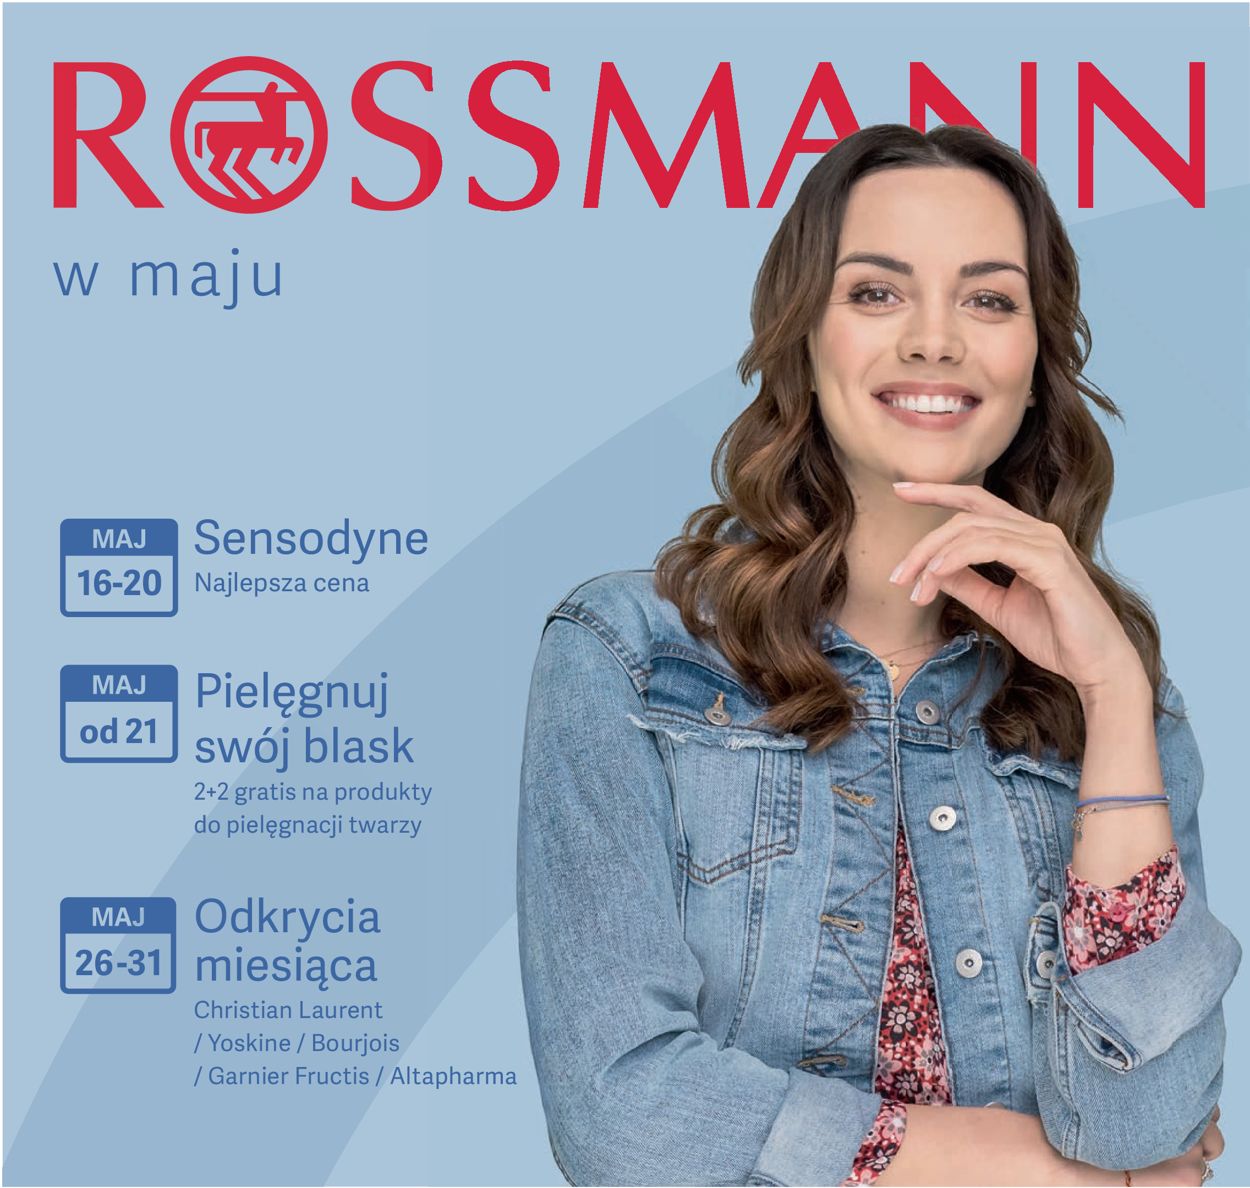 Rossmann Gazetka od 16.05.2019